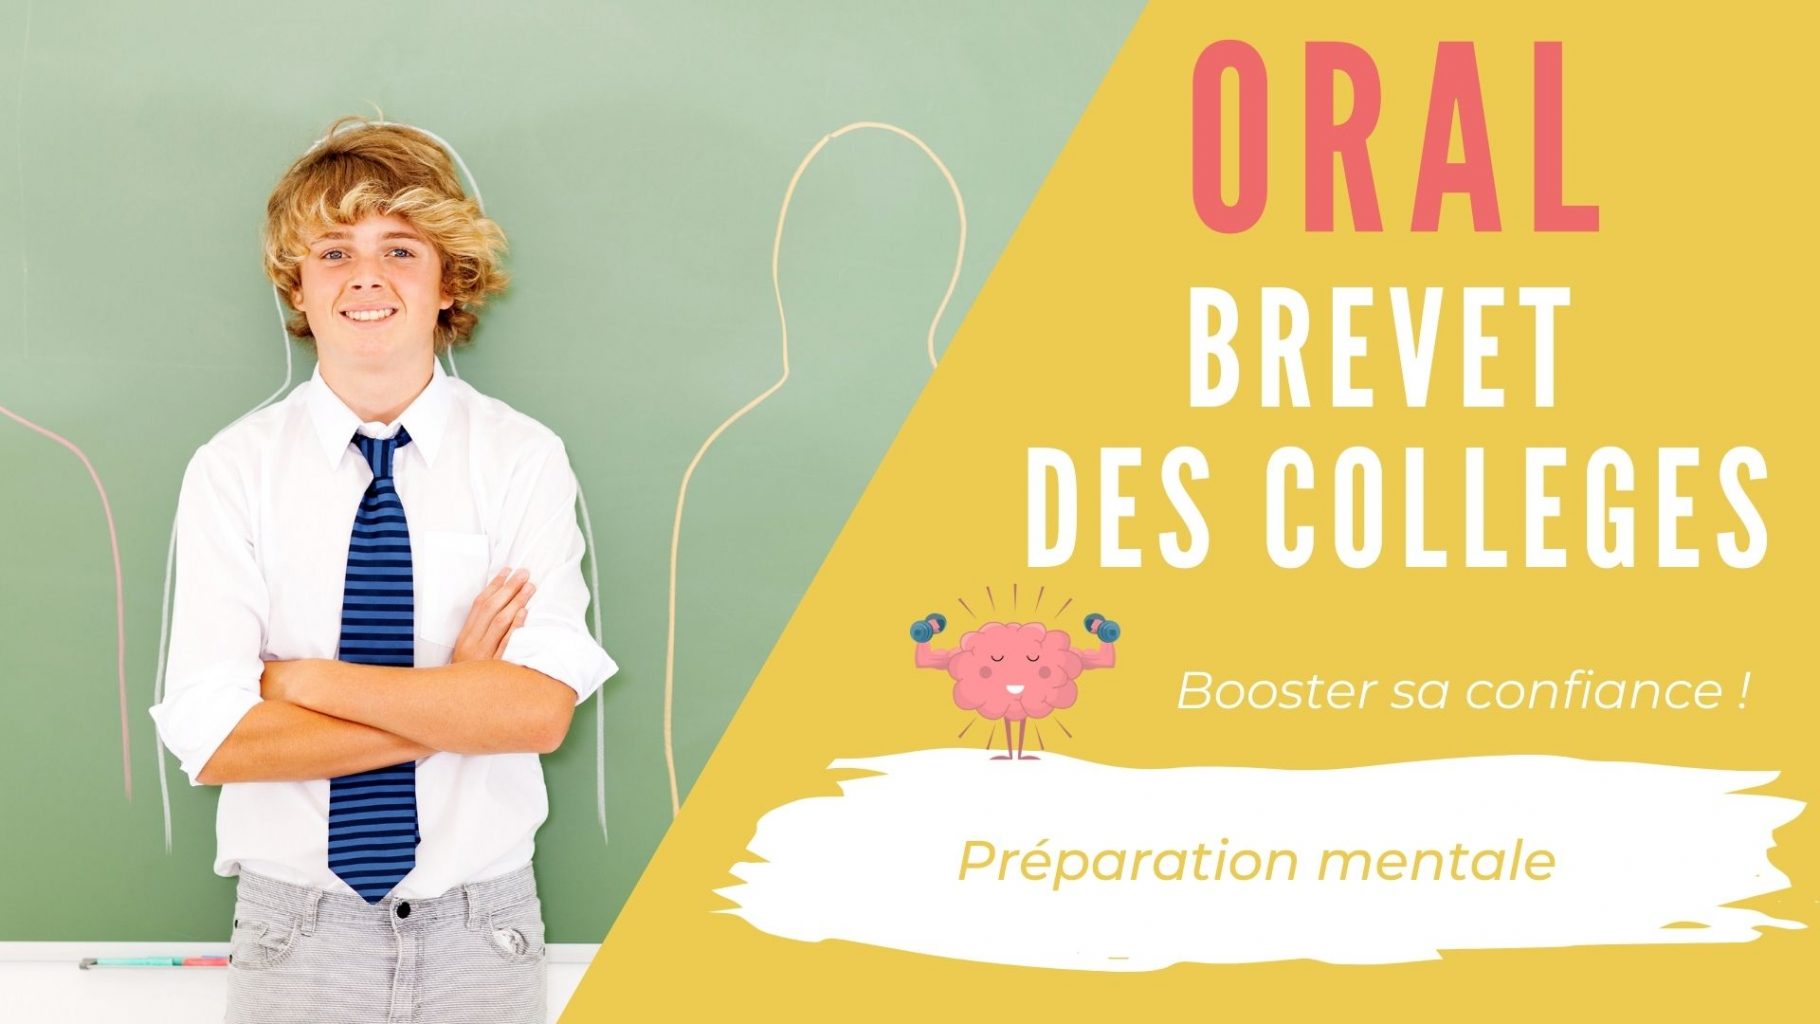 oral-brevet-colleges-bordeaux-preparation